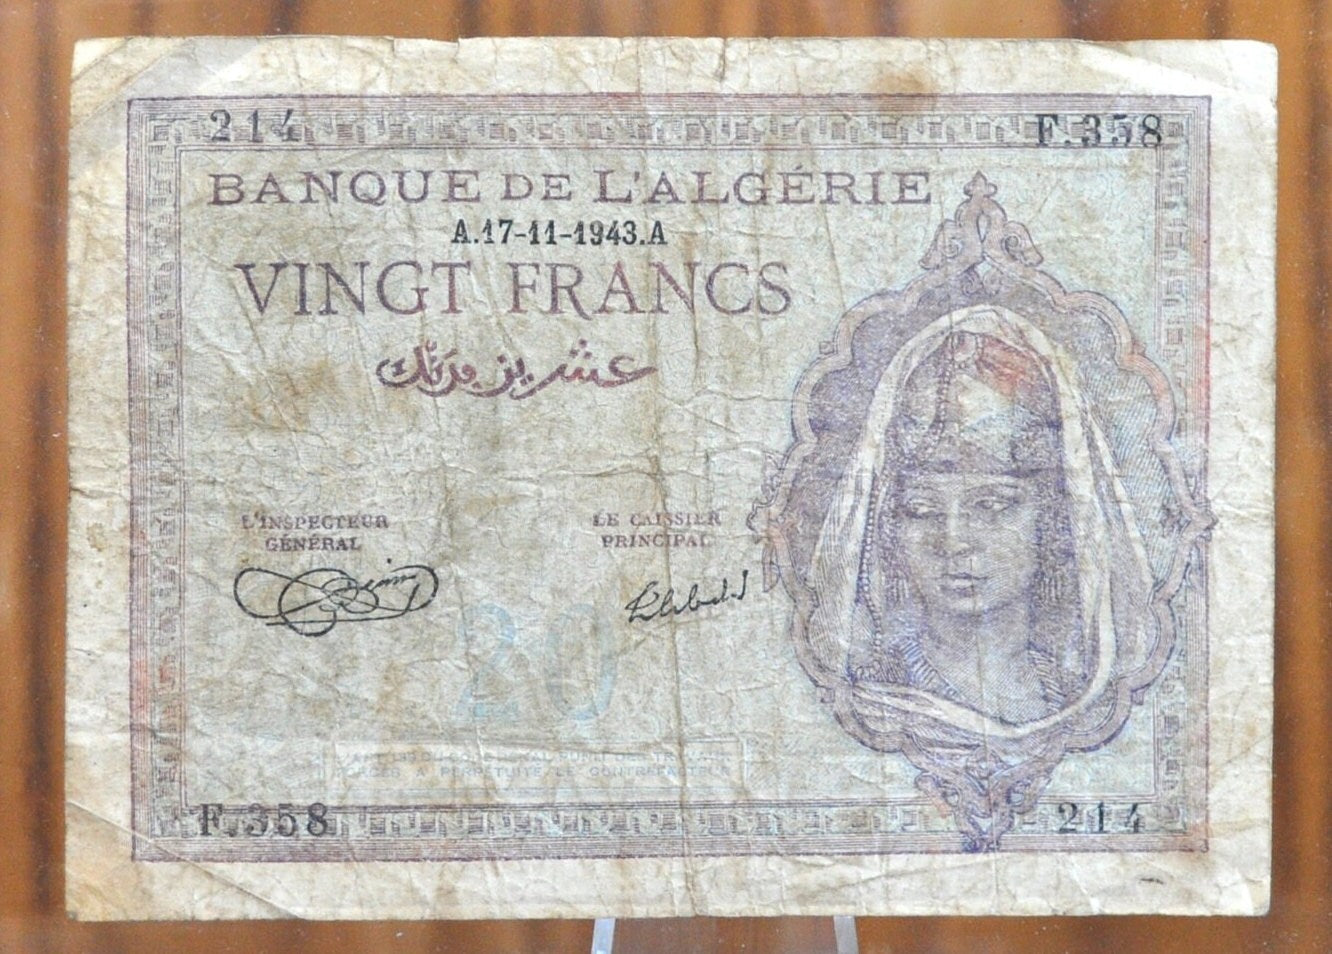 1943 Bank of Algeria 20 Franc Banknote - WWII Era Paper Money, Beautiful Design - Vingt Francs Banknote 1943, Banque De L'Algerie